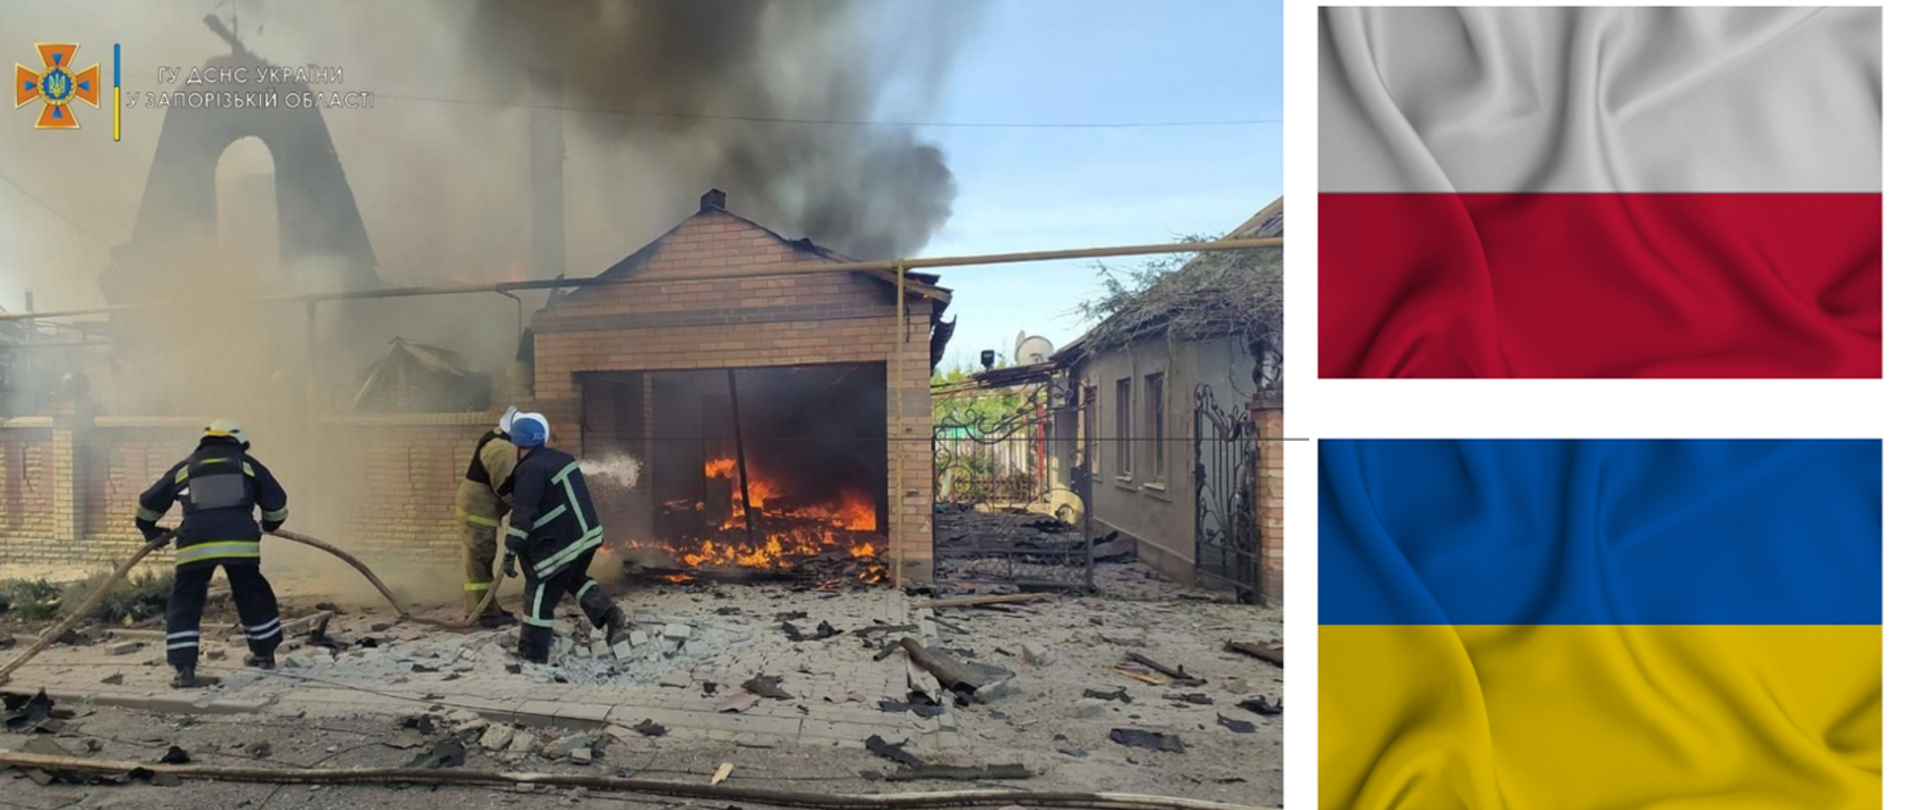 Po lewej stronie zdjęcie strażaków ukraińskich gaszących pożar , wokół zniszczone wojną budynki, na prawo flaga Polski u góry i flaga Ukrainy na dole